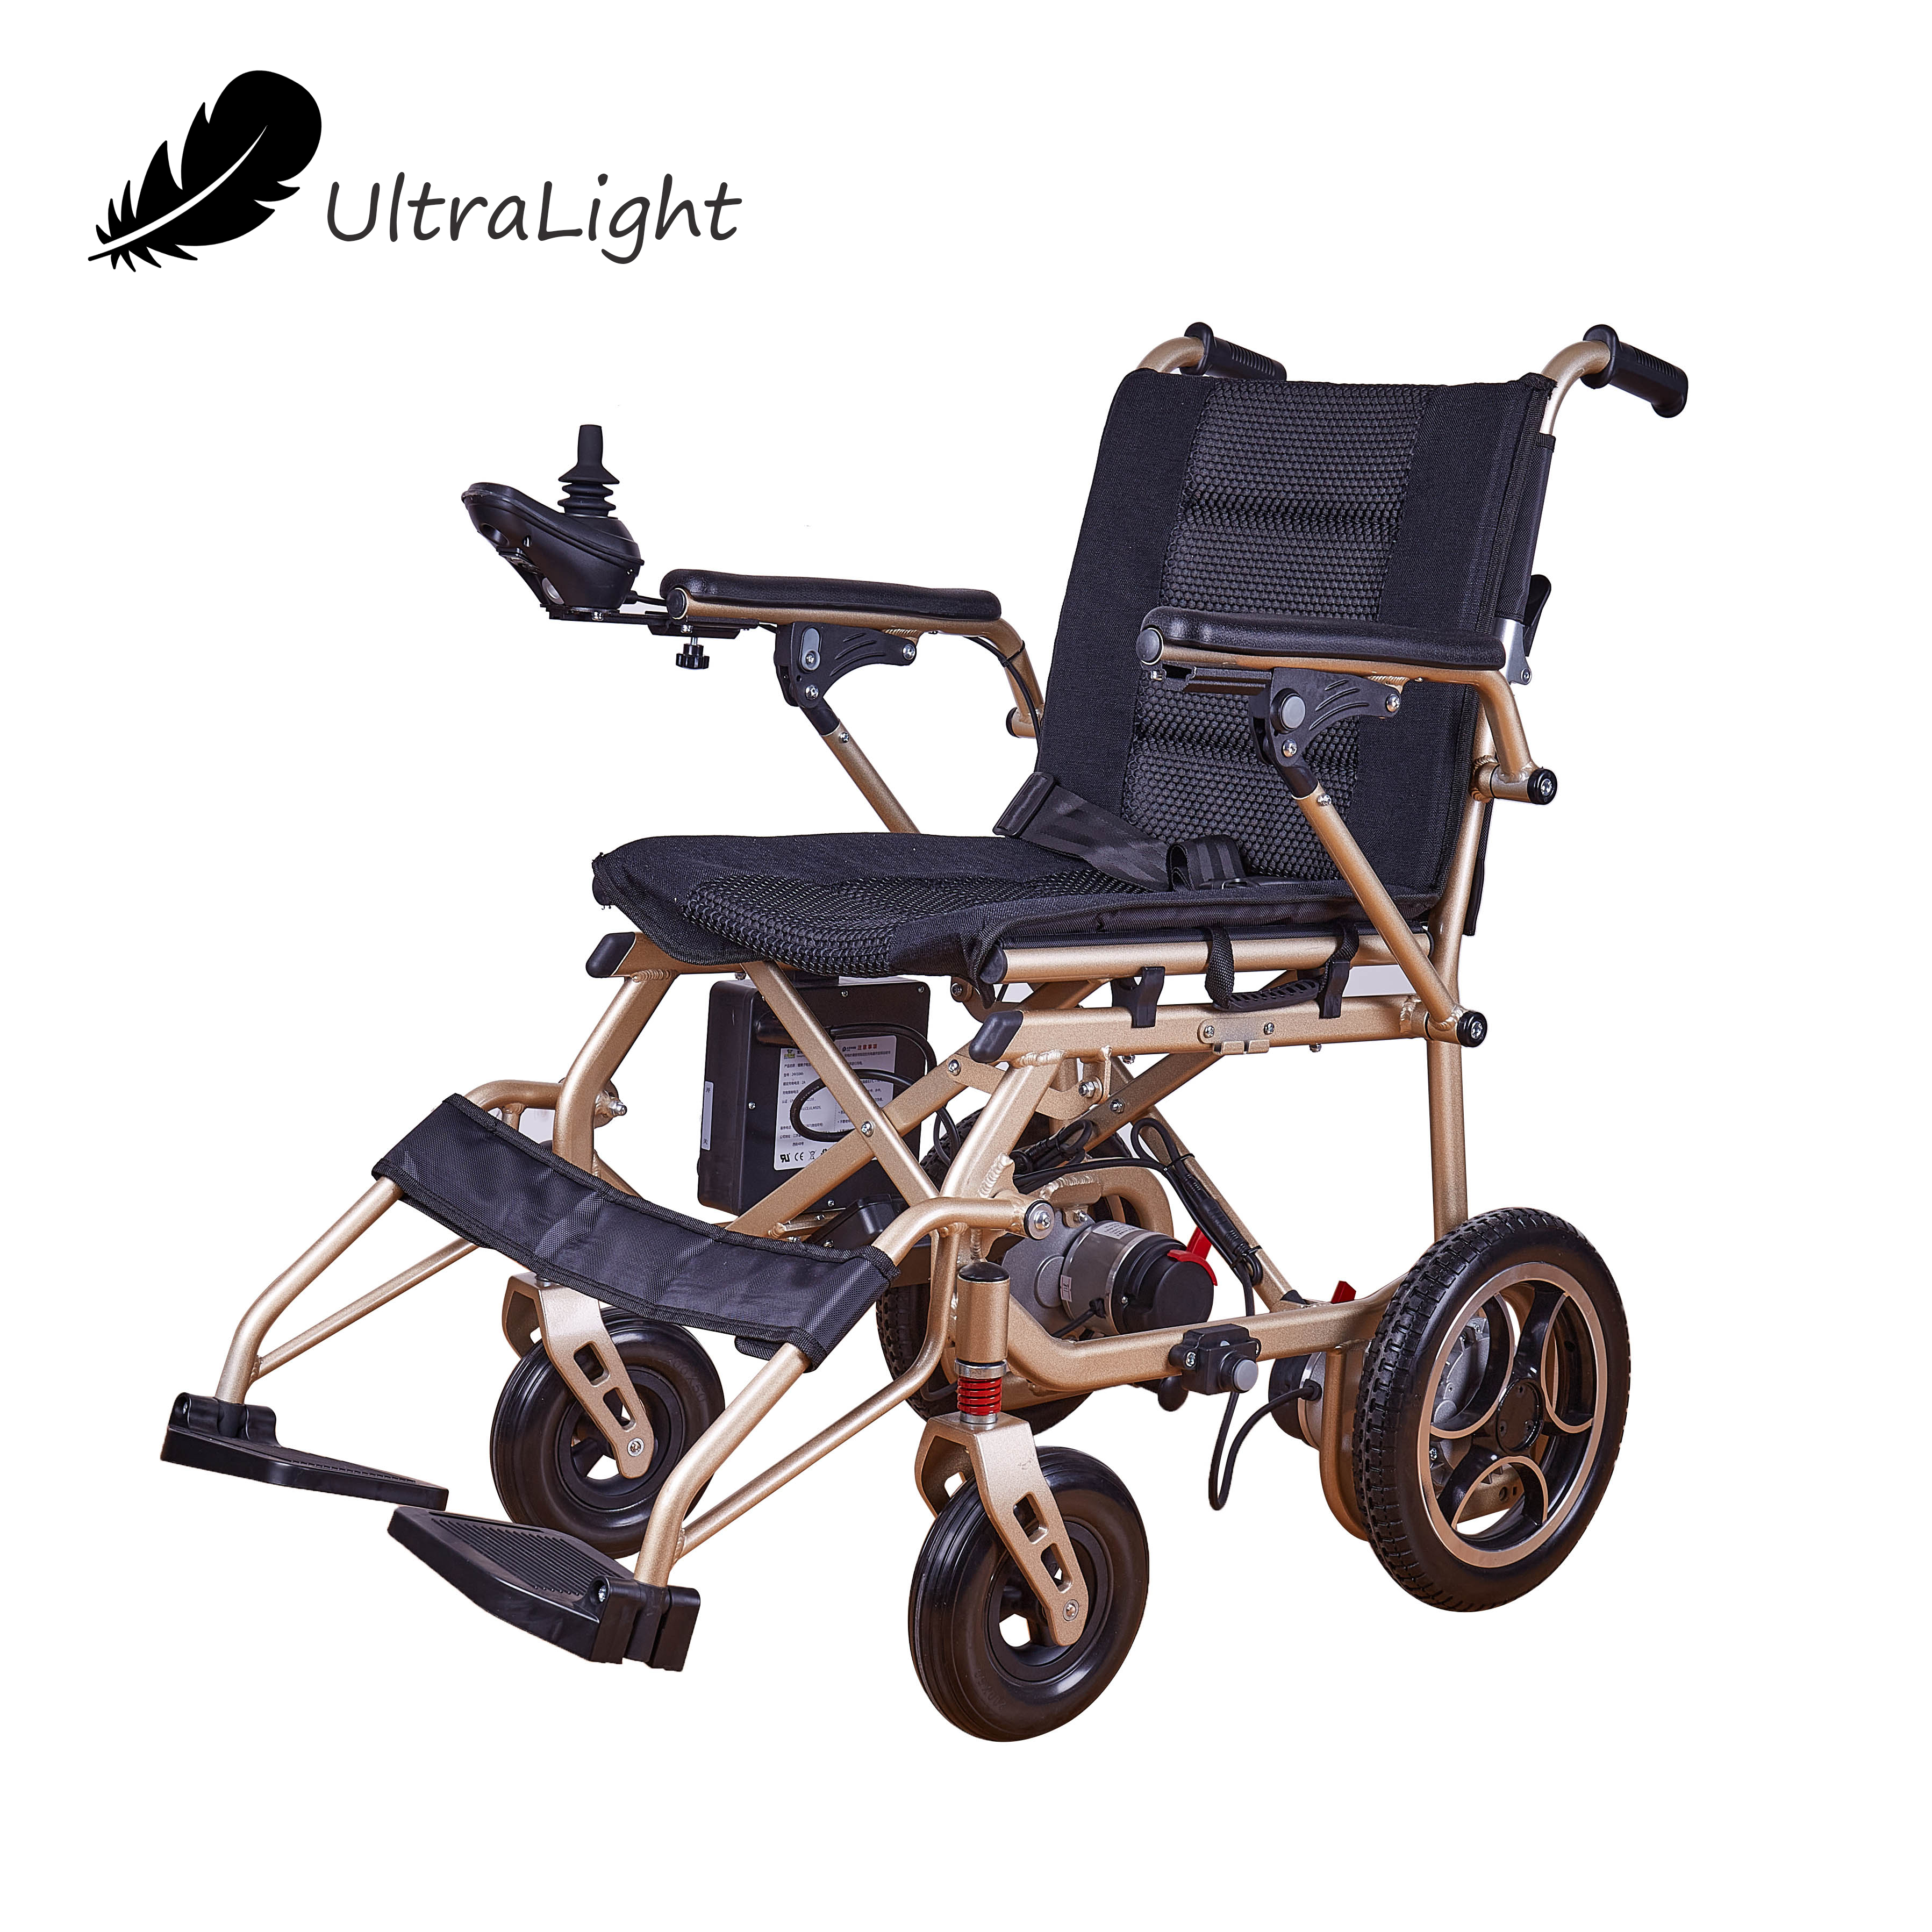 Összecsukható elektronikus kerekes szék rehabilitációs terápiás kellékek, magas háttámlával dönthető, mozgássérült elektromos kerekesszék idősek és mozgássérültek számára